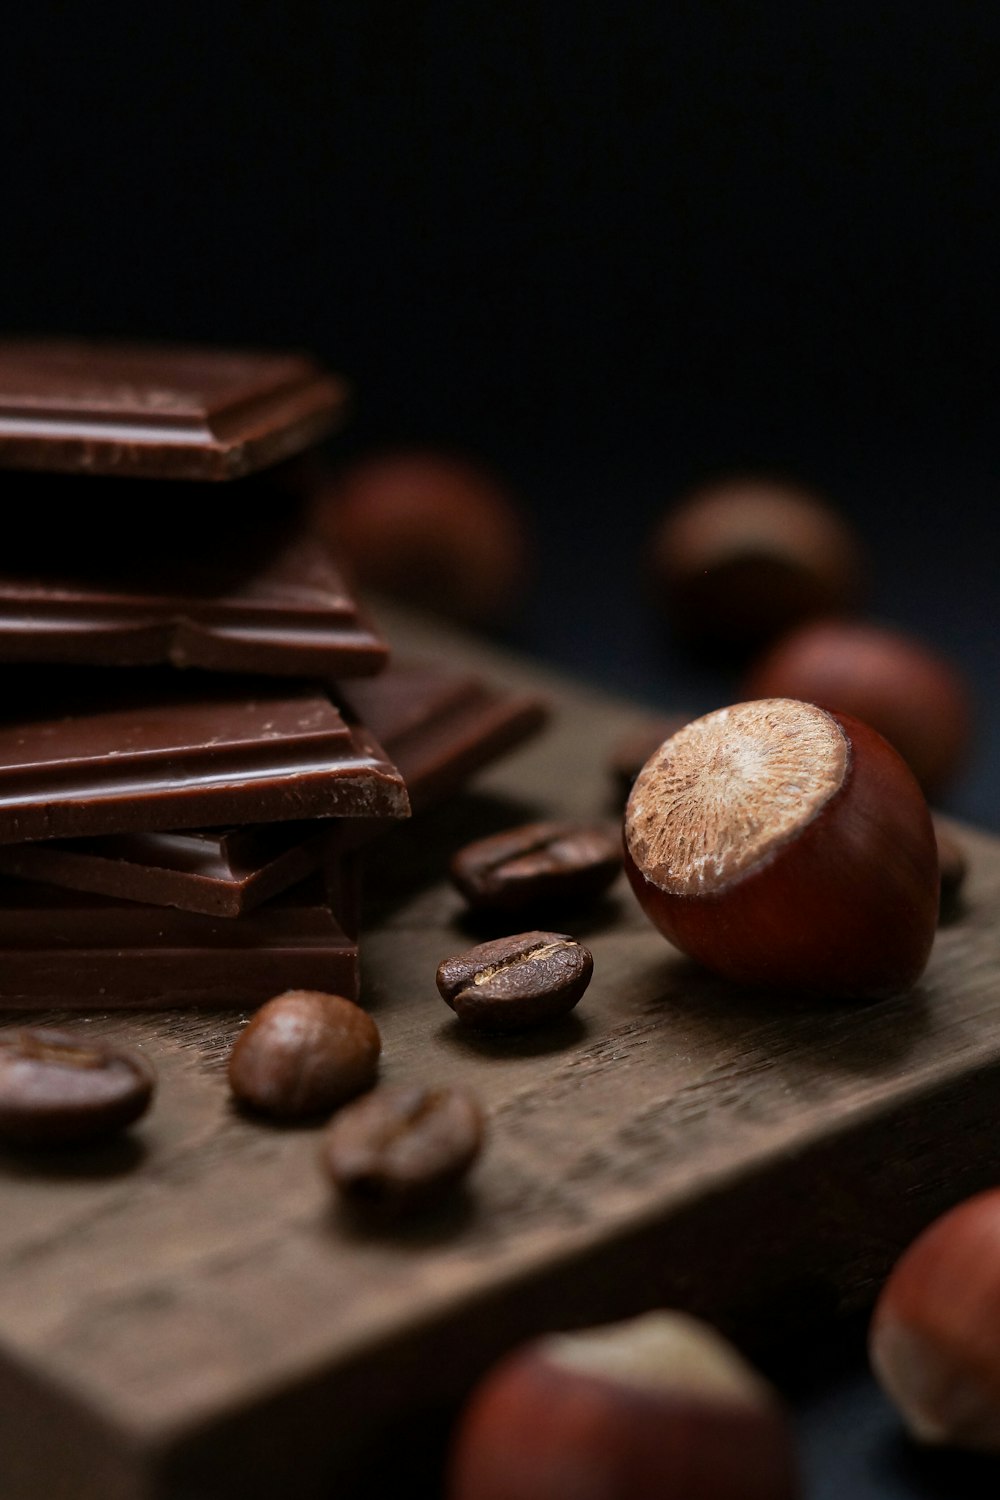 Kakao in der Nähe von Schokolade